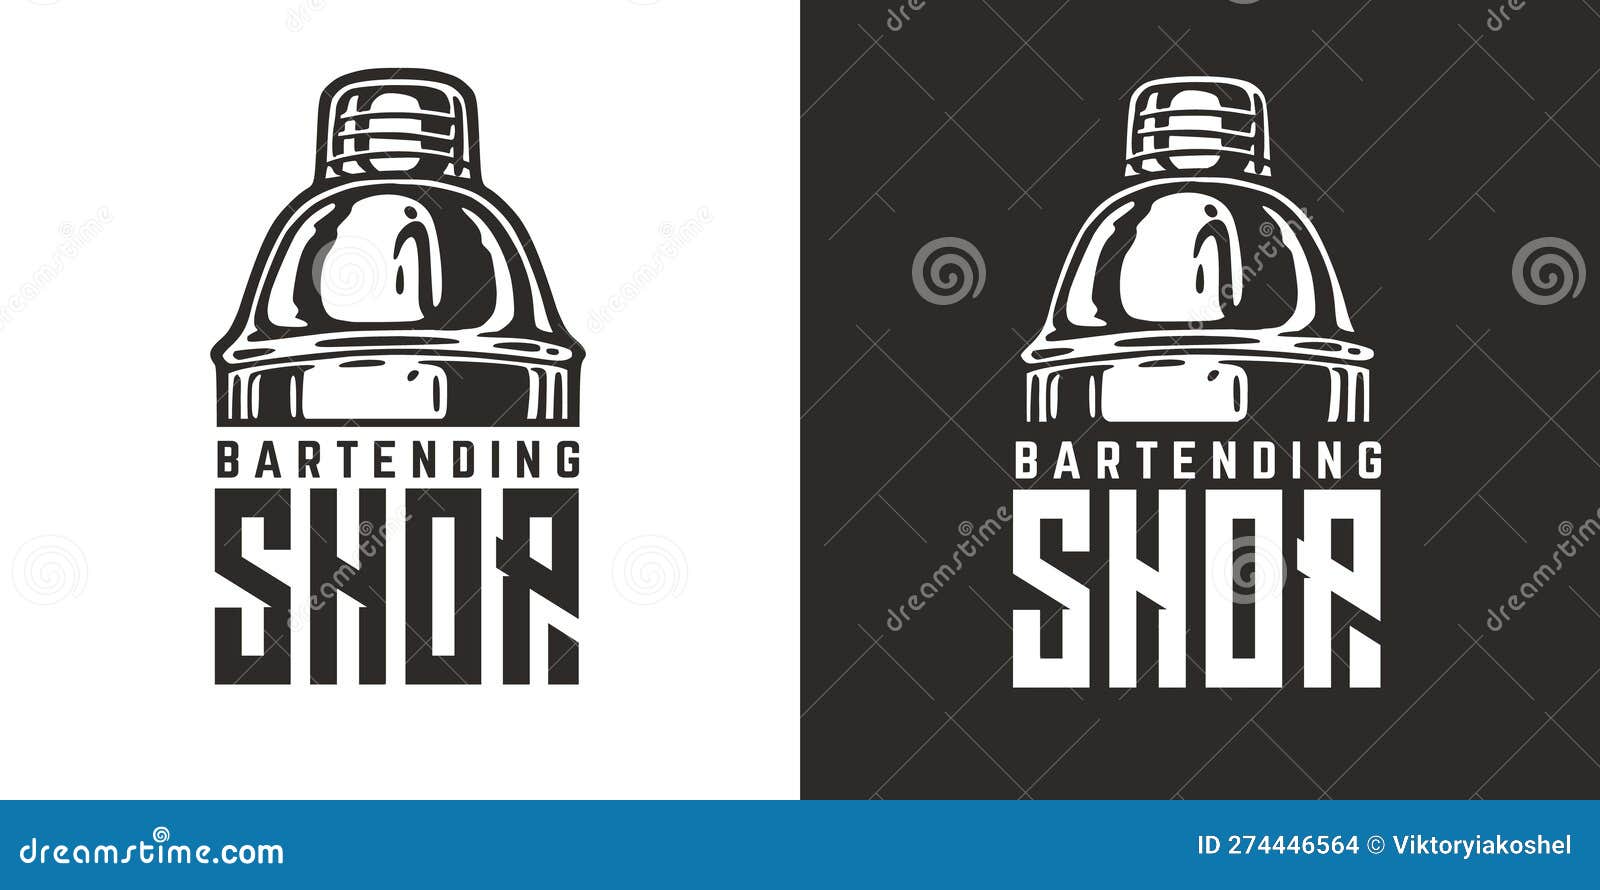 https://thumbs.dreamstime.com/z/bartender-logo-cocktail-shaker-bartending-shop-barman-bar-store-chromed-metal-boston-274446564.jpg